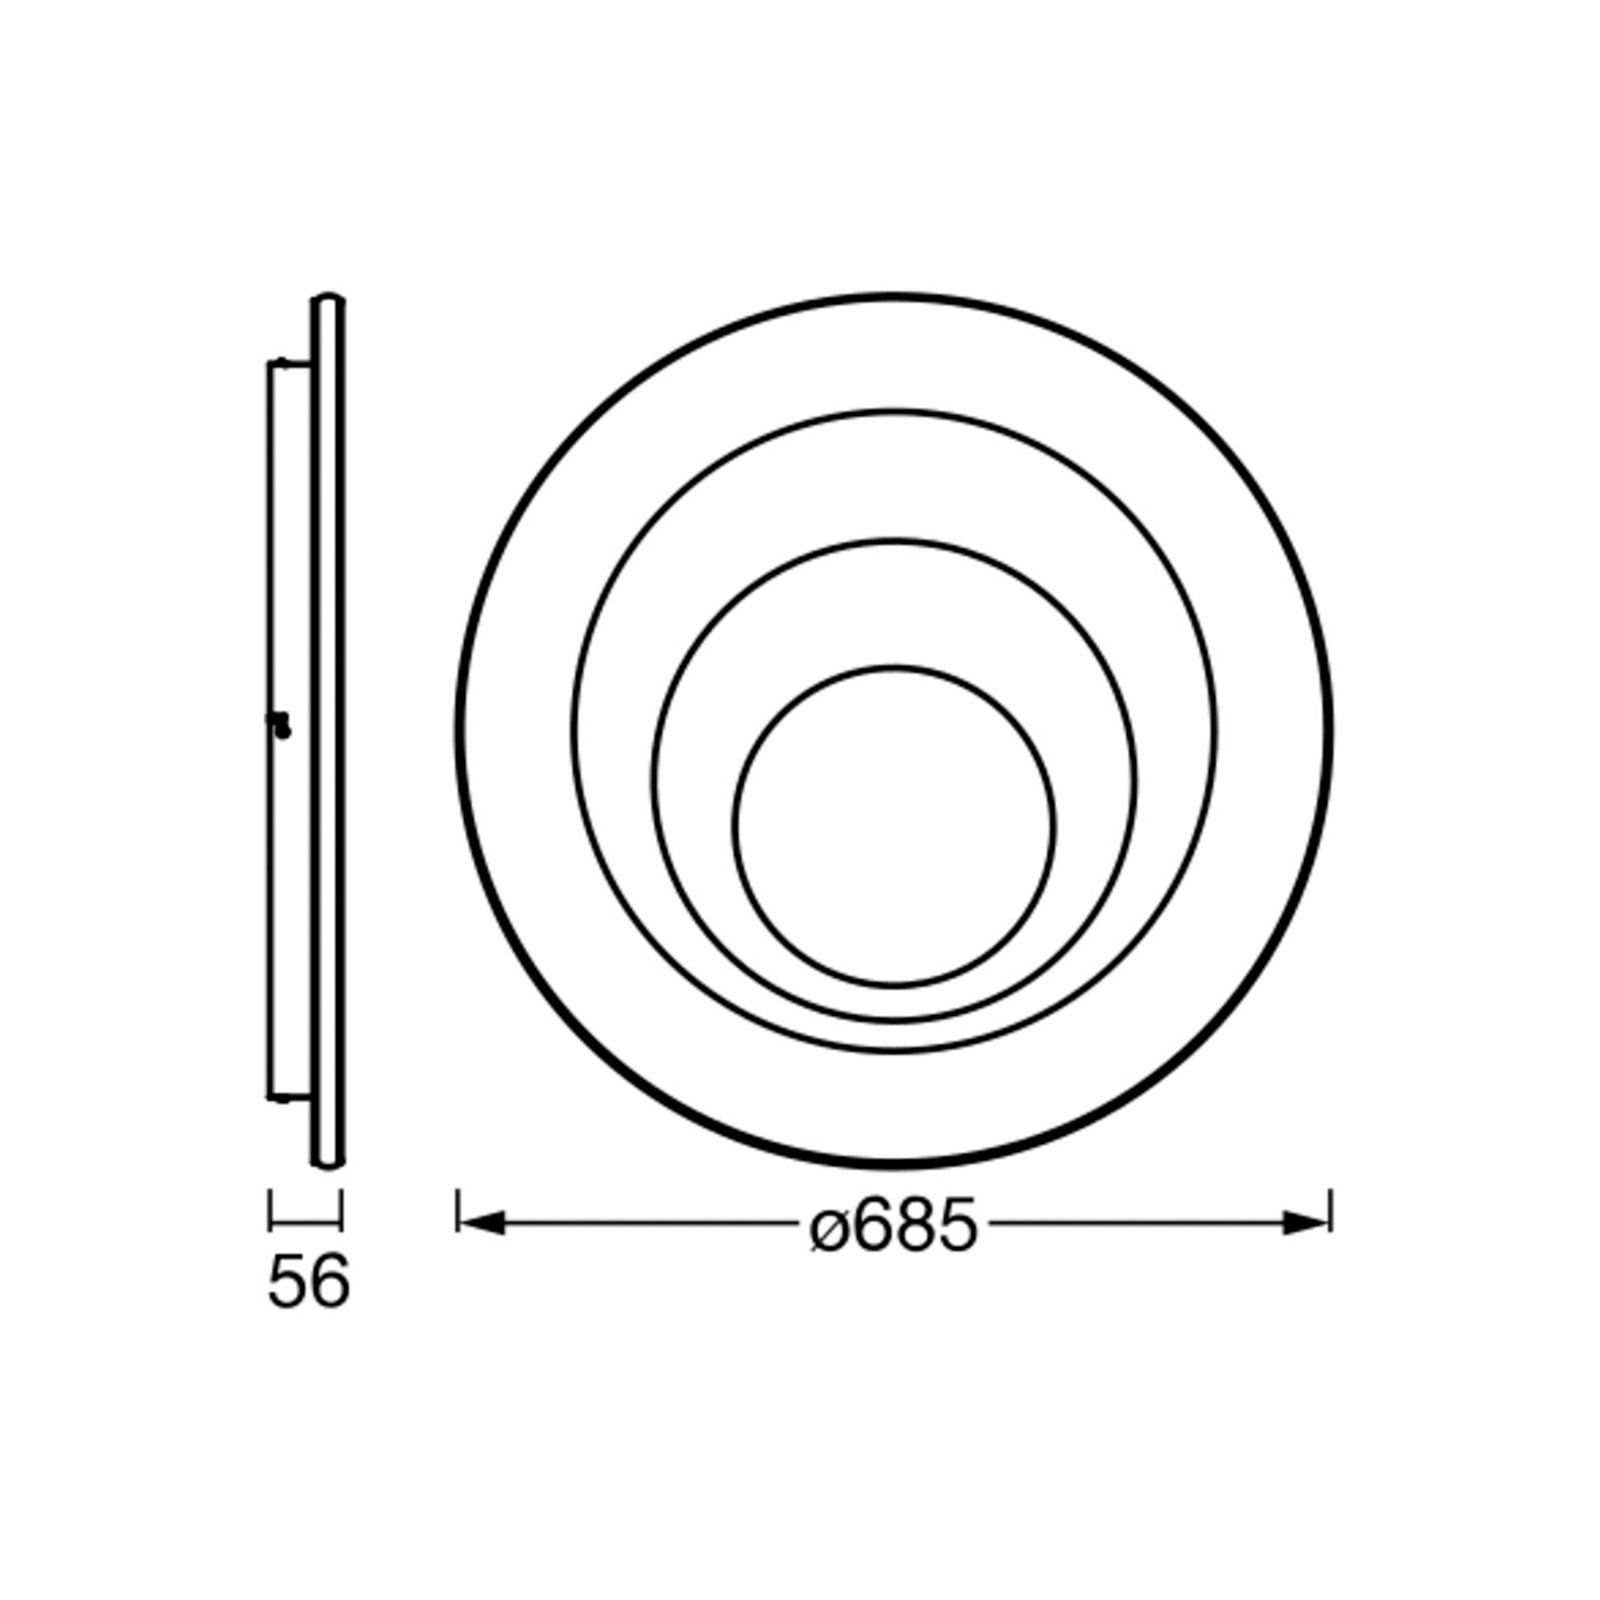 LEDVANCE Orbis Spiral Round Deckenleuchte Ø68,5cm